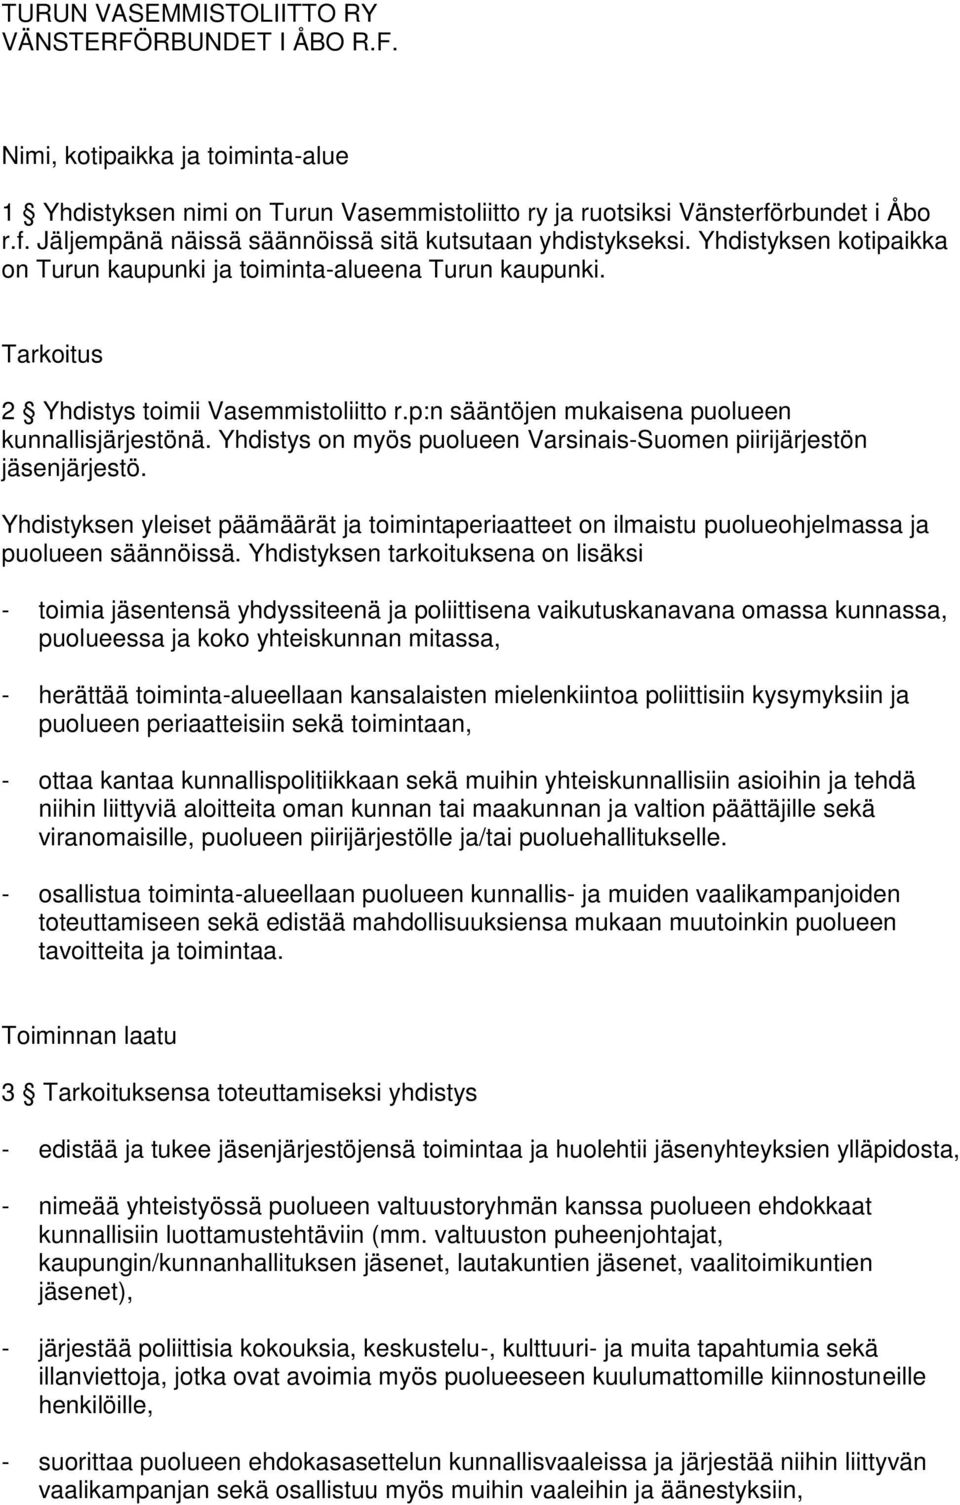 Tarkoitus 2 Yhdistys toimii Vasemmistoliitto r.p:n sääntöjen mukaisena puolueen kunnallisjärjestönä. Yhdistys on myös puolueen Varsinais-Suomen piirijärjestön jäsenjärjestö.